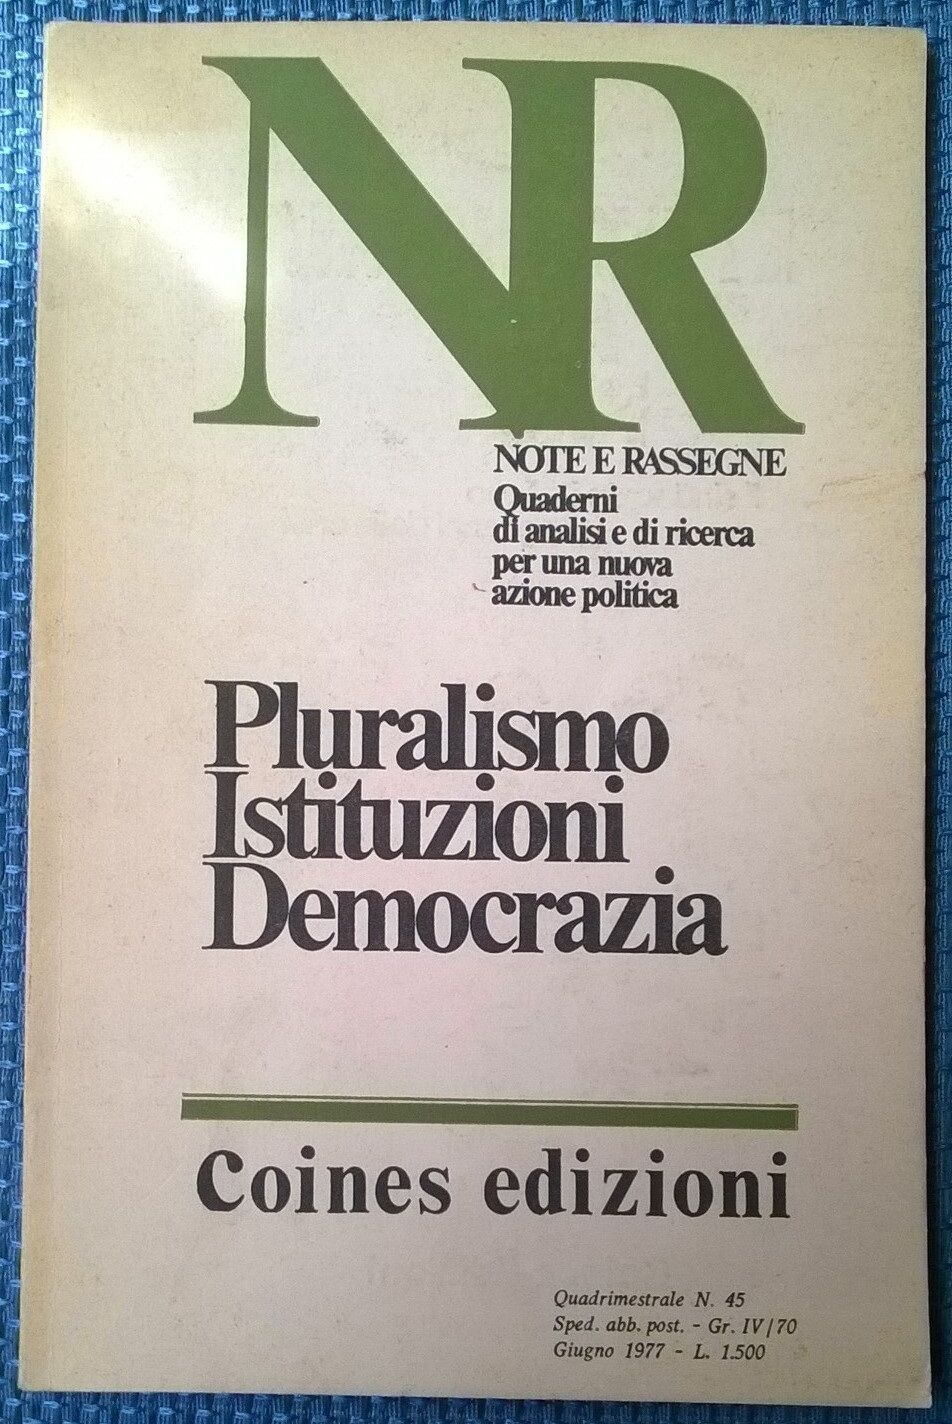 Note e rassegne - Pluralismo Istituzioni Democrazia - N. 45, Coines, 1977 - L 